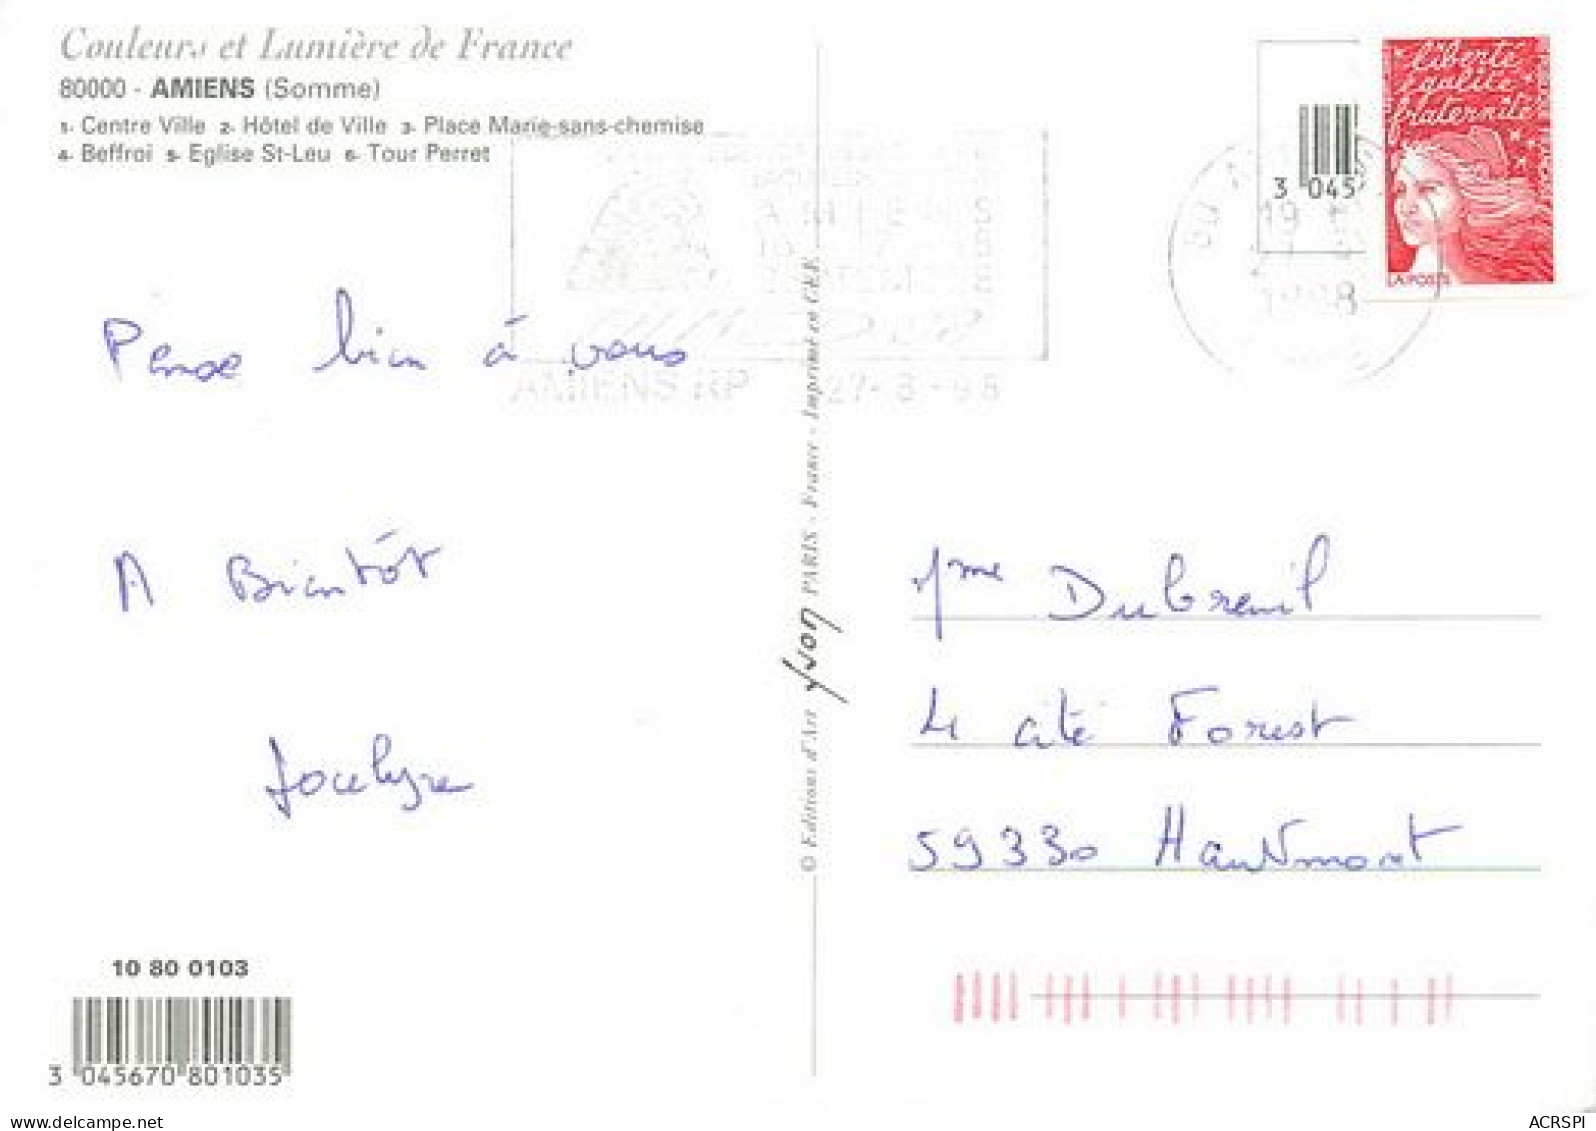 AMIENS  Les Monuments De La Ville  33   (scan Recto-verso)MA2269Bis - Amiens